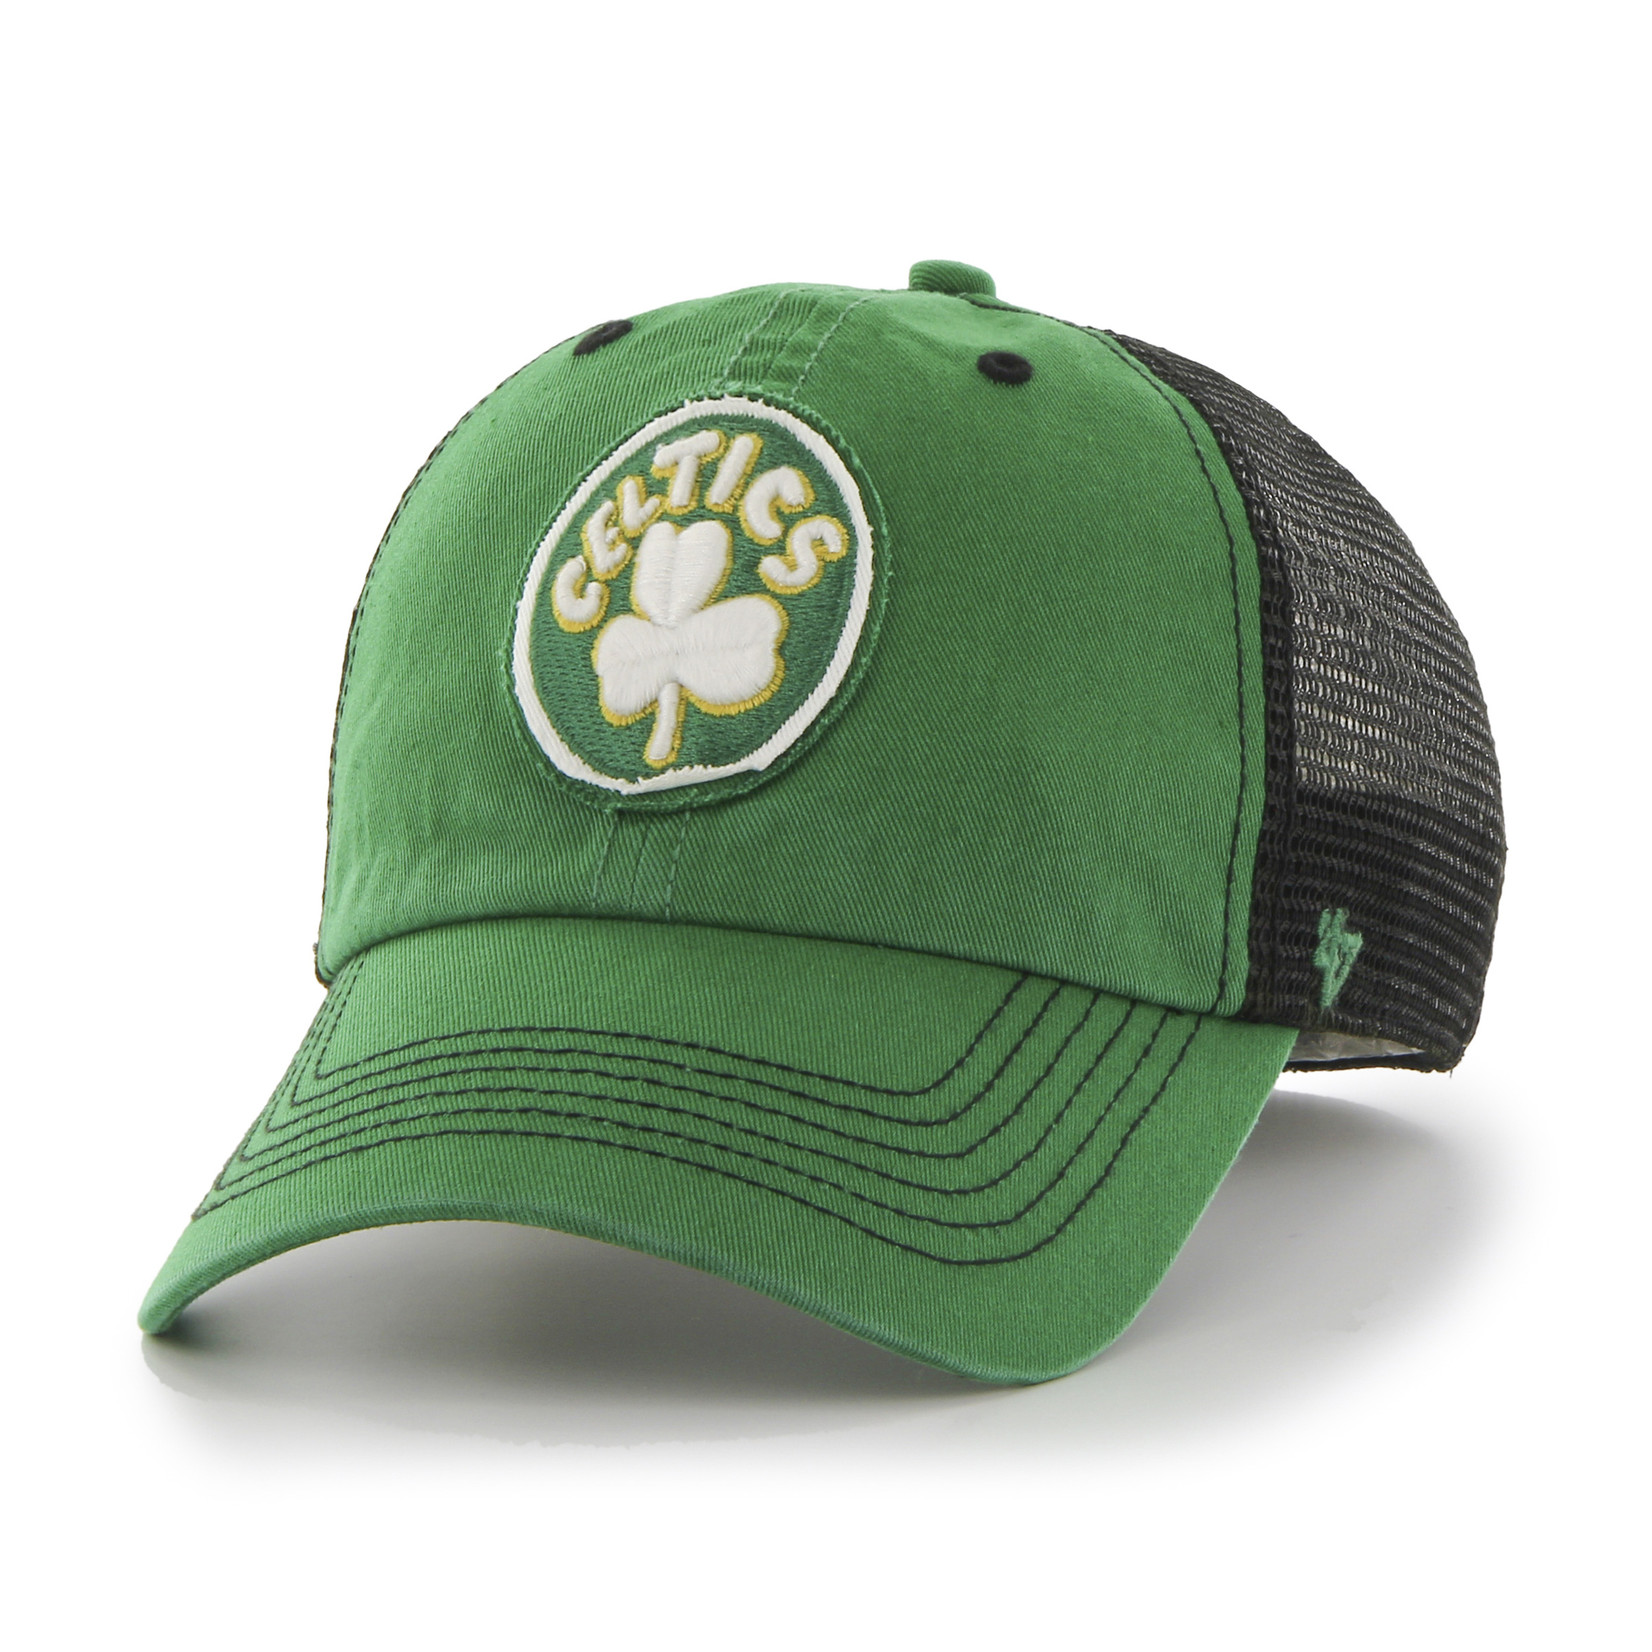 '47 Brand Celtics Green/Black Trucker Hat L/XL